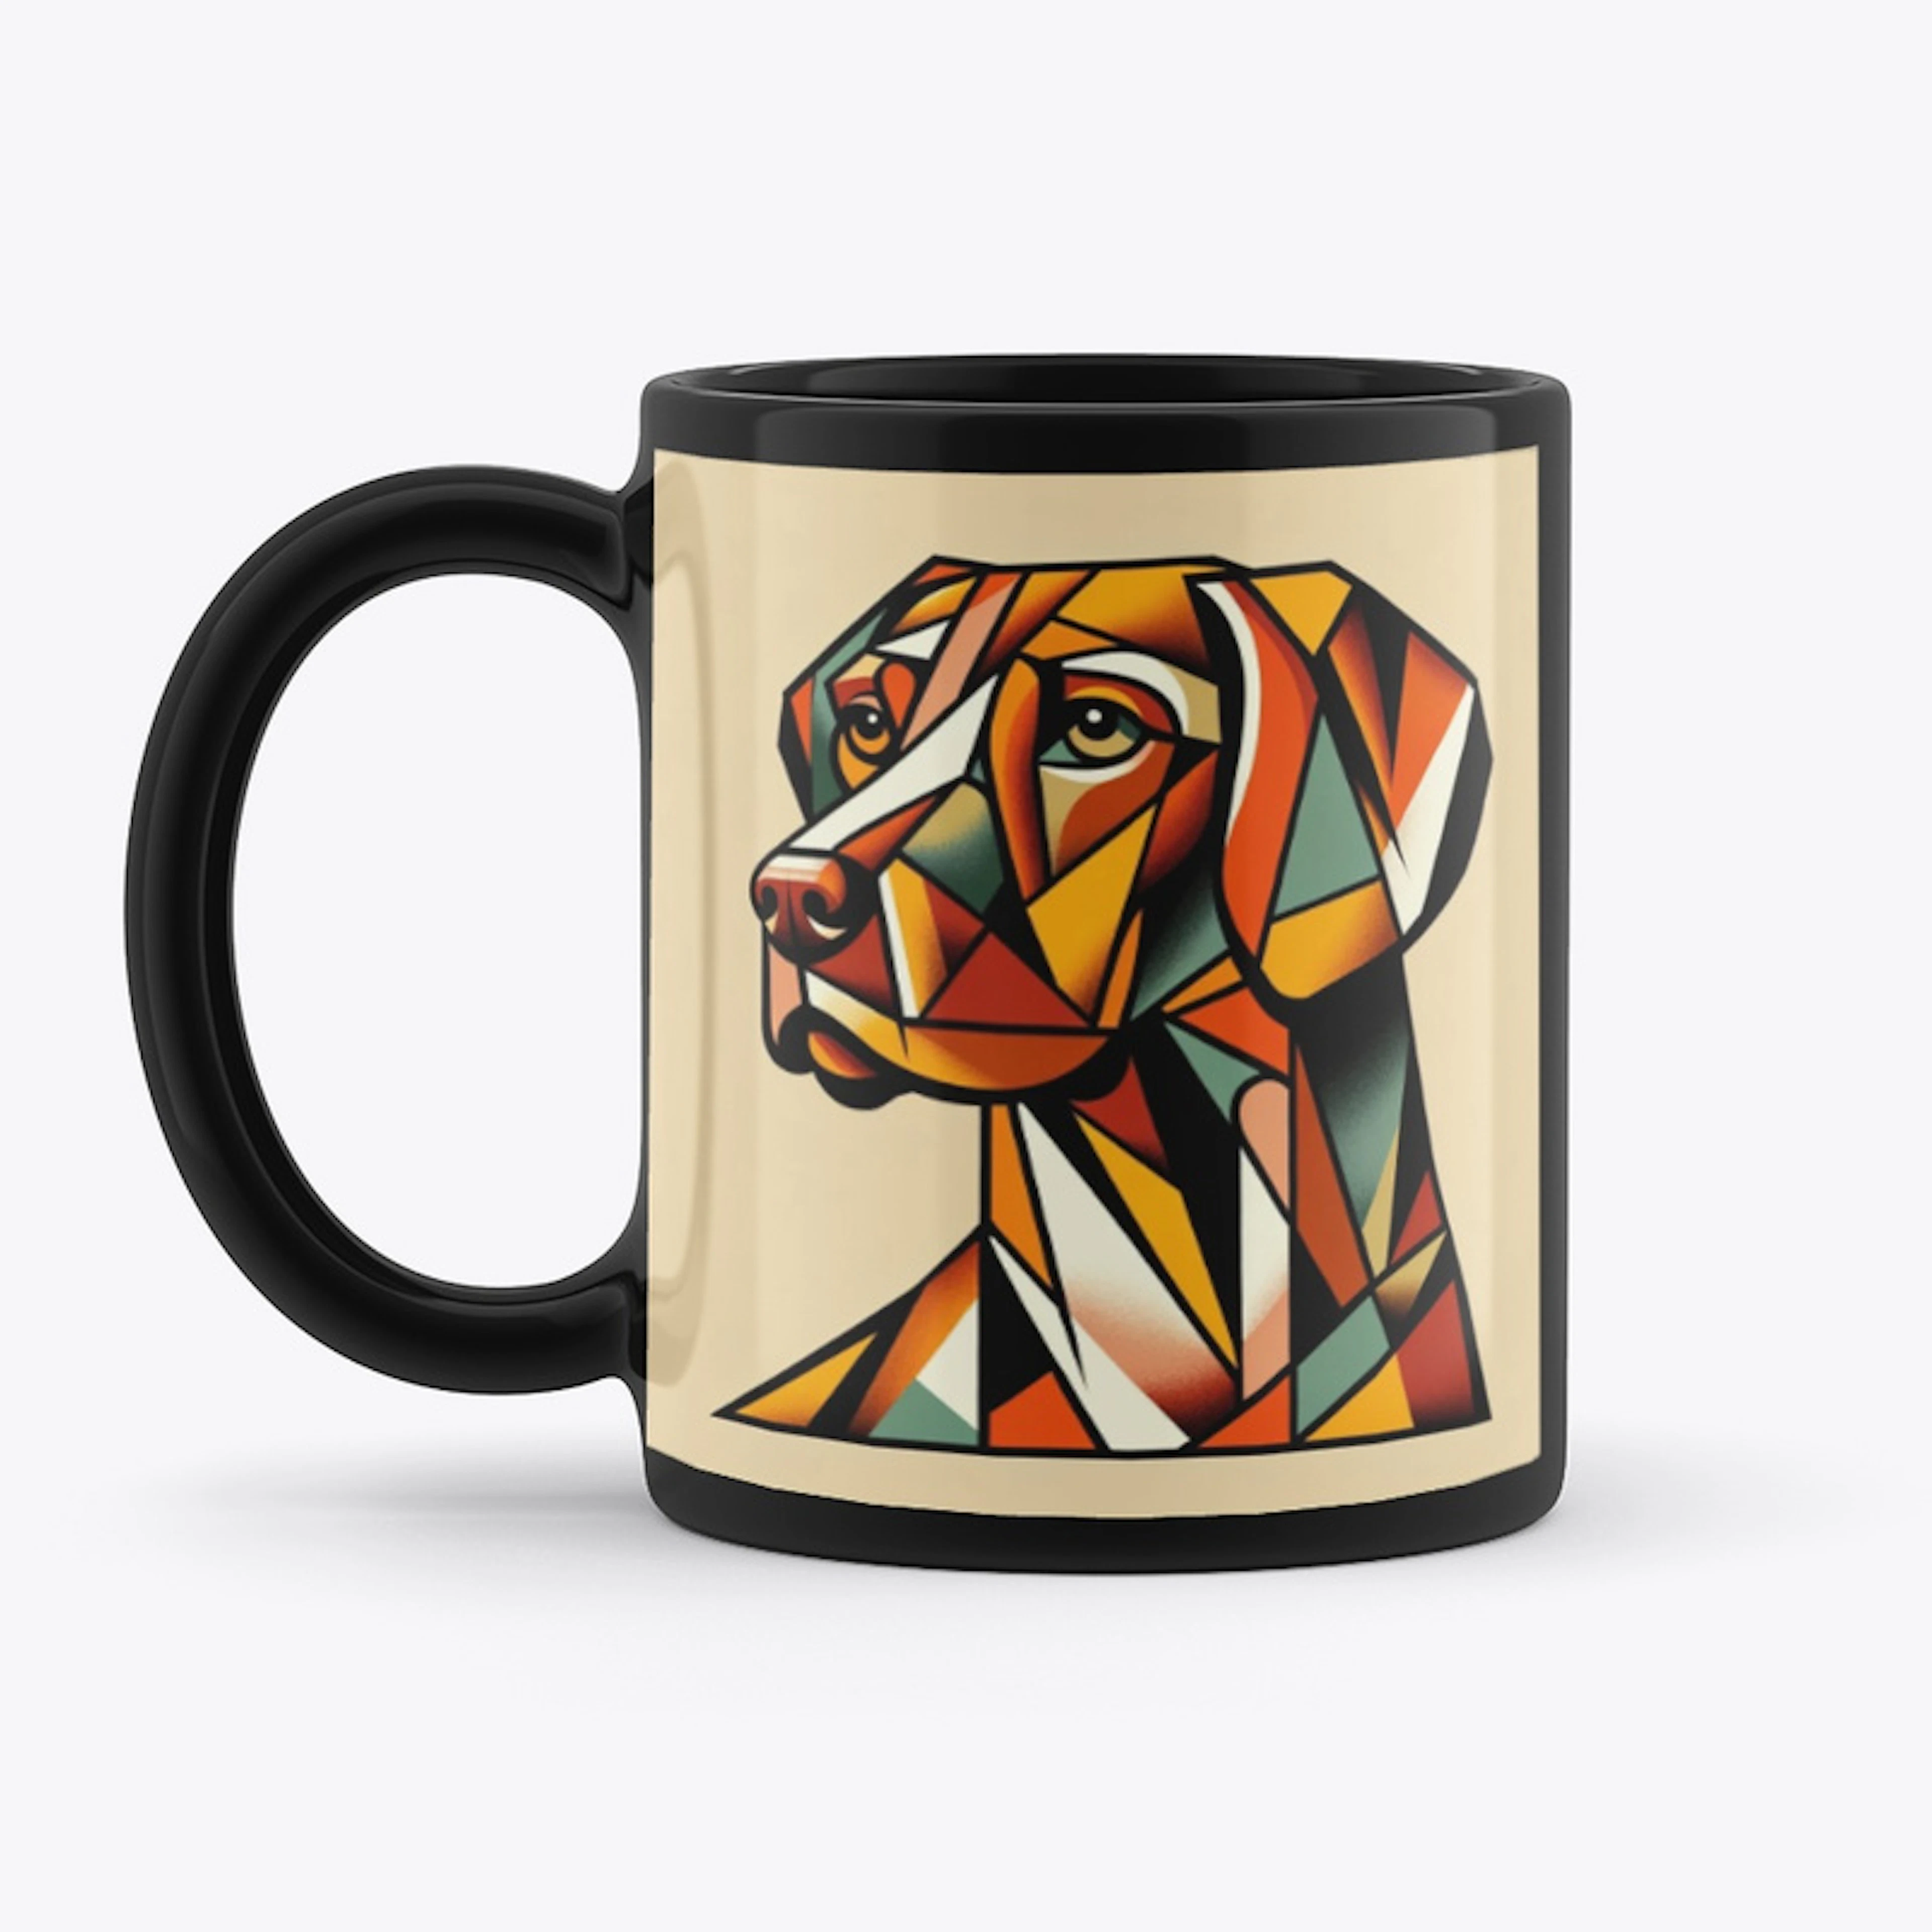 Hungarian vizsla mug - cubist